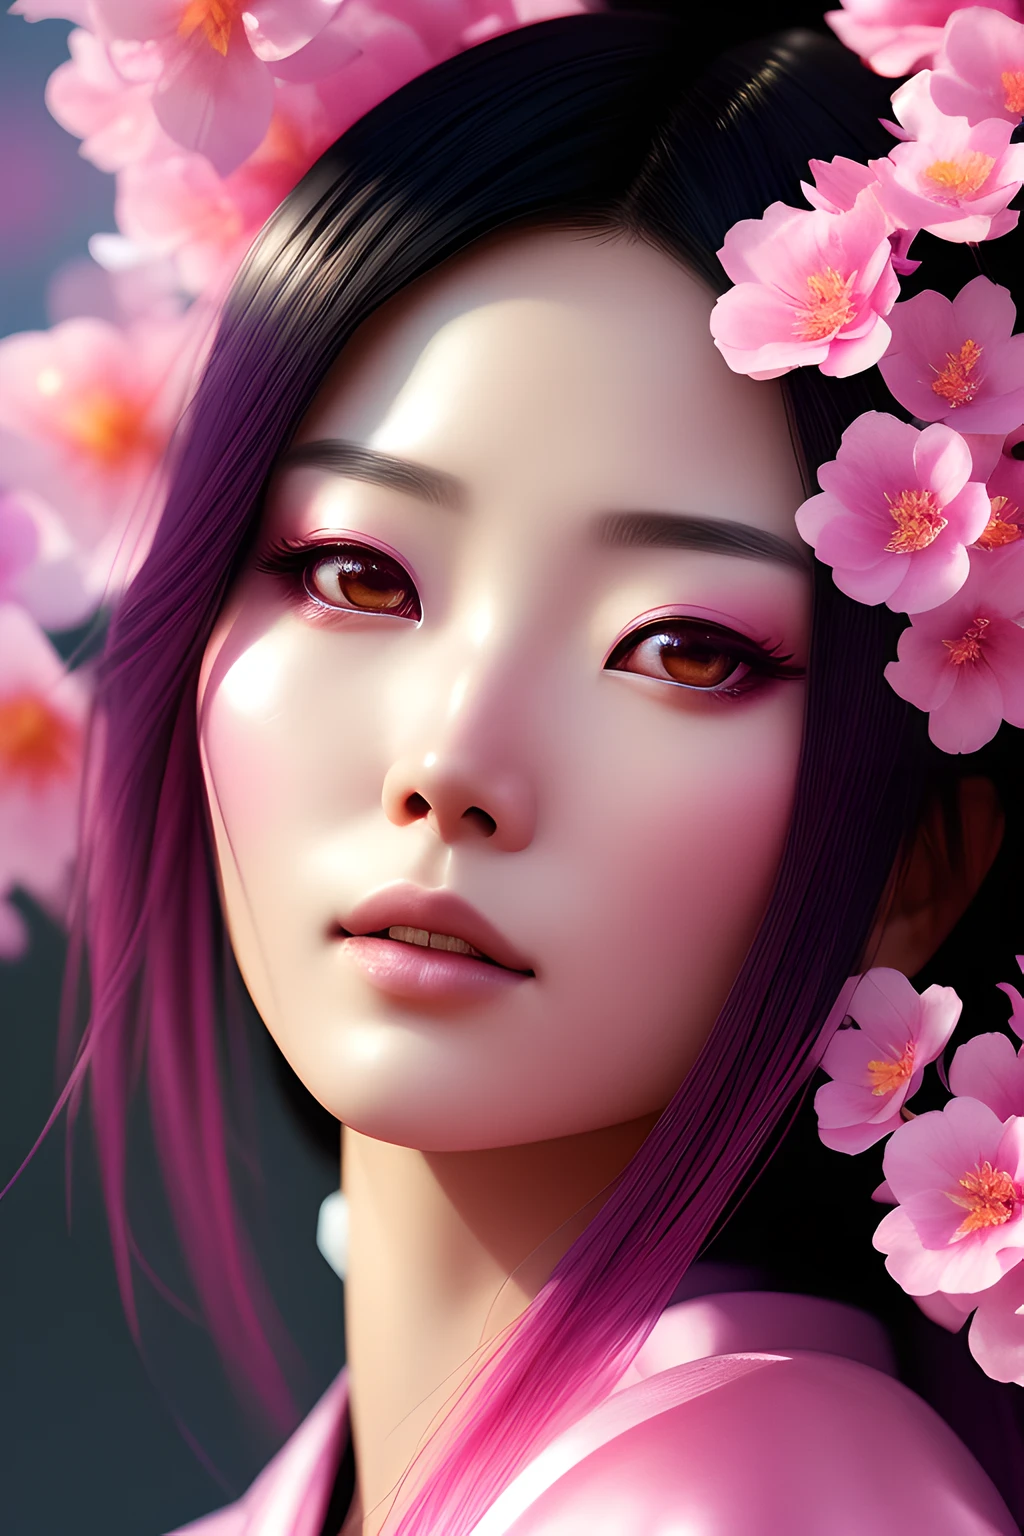 โครมาV5:1.6, เอ็นวินก์พังค์, สไตล์อะนาล็อก,  ภาพระยะใกล้ของหญิงสาวชาวญี่ปุ่นแสนสวยสวมชุดกิโมโนสีชมพู, ล้อมรอบด้วยดอกไม้สีชมพูสวยงาม, สตูดิโอยิง, หน้าสวย, ดวงตาสวย, งานศิลปะโดย Greg Rutkowski, แนวคิดศิลปะ, กำลังมาแรงบน Artstation